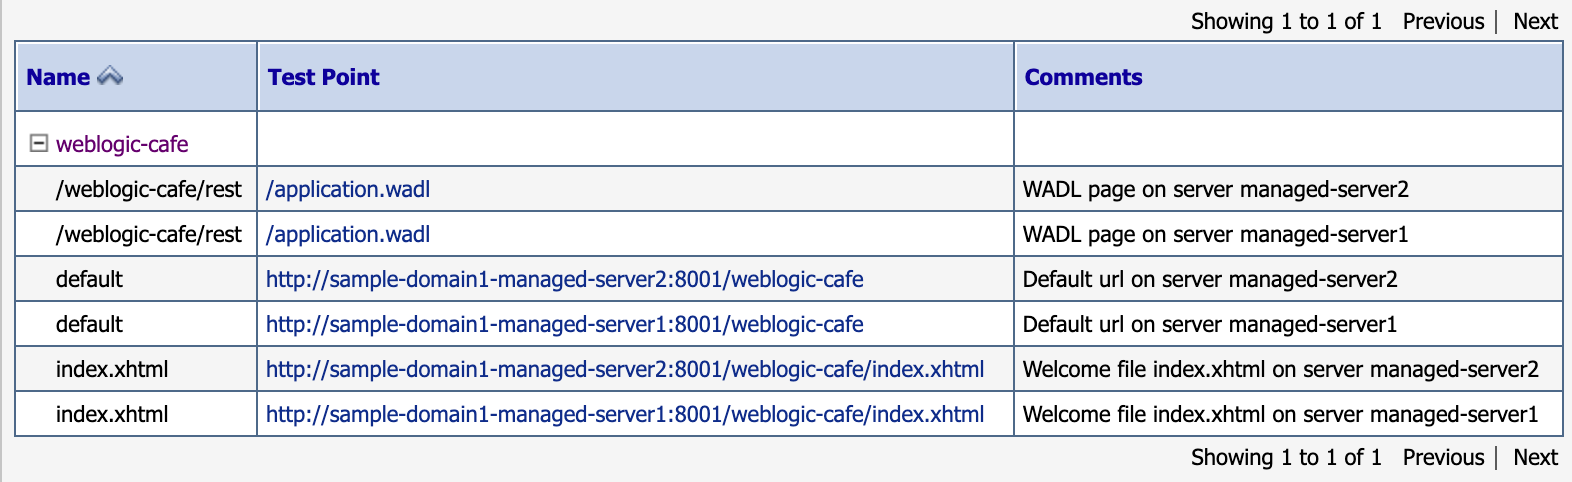 Screenshot of weblogic-cafe test points.